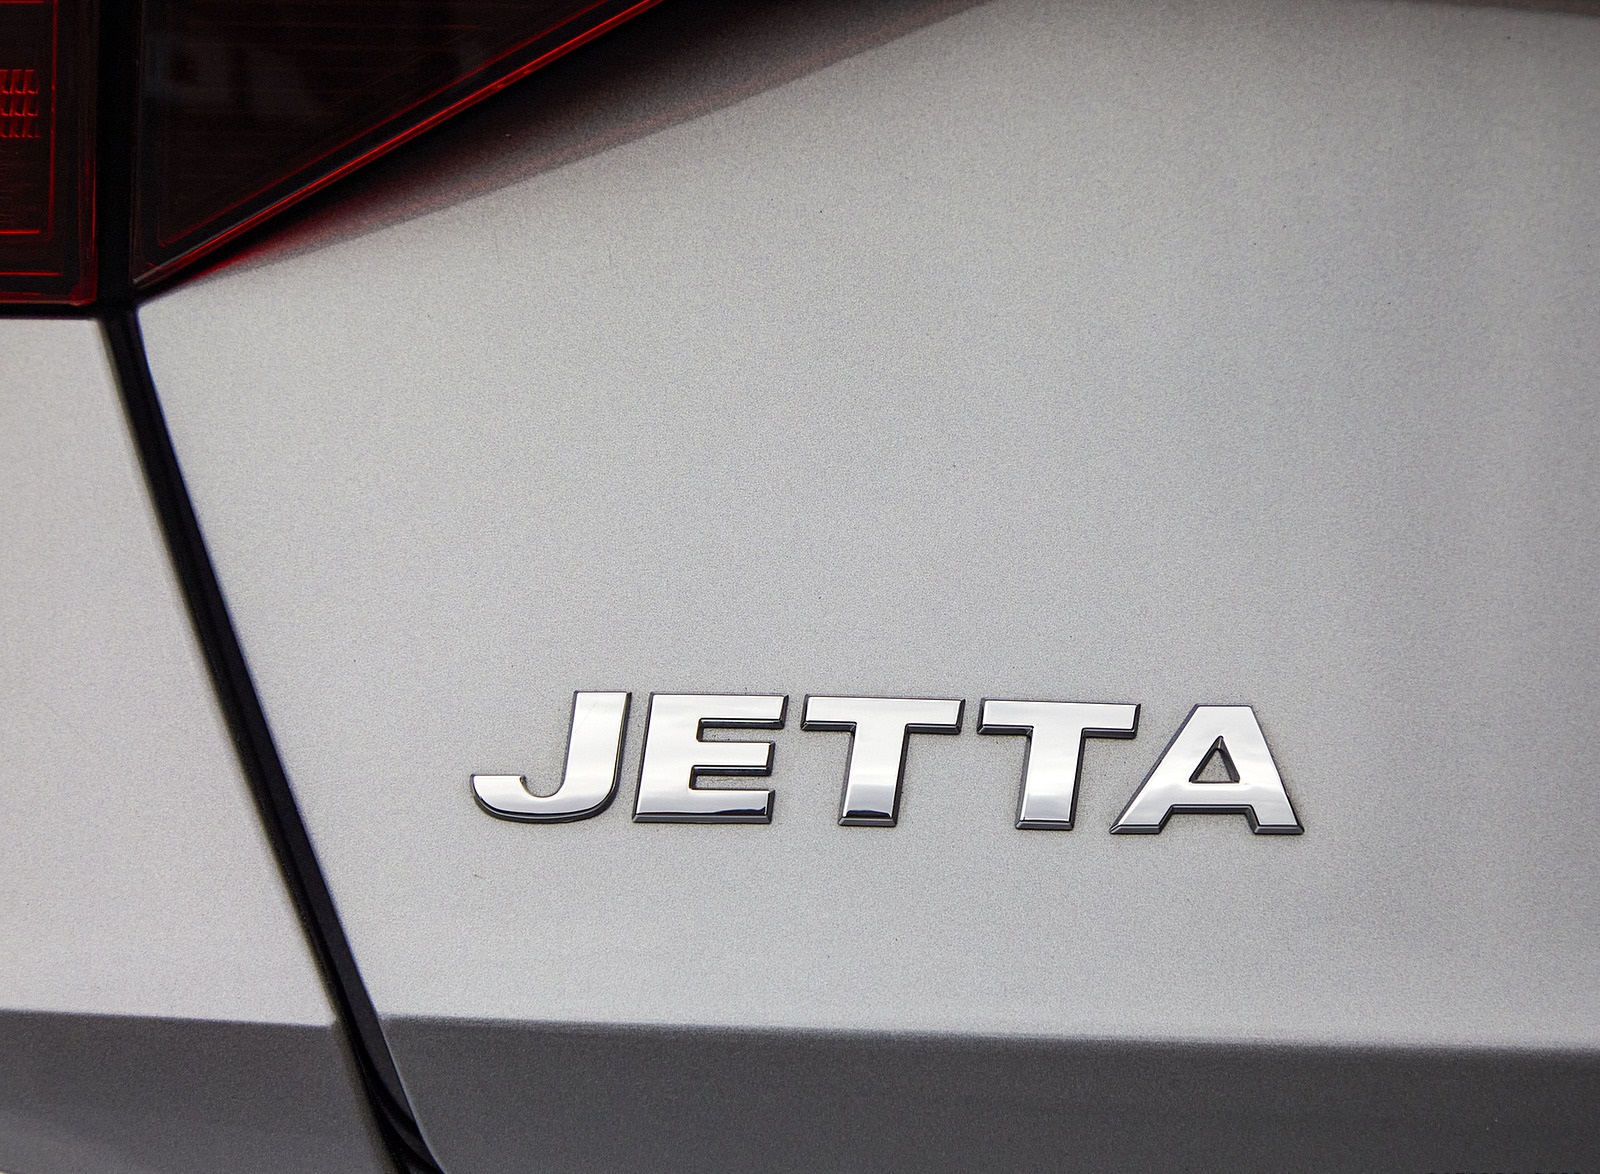 2022 Volkswagen Jetta Badge Wallpapers #22 of 61